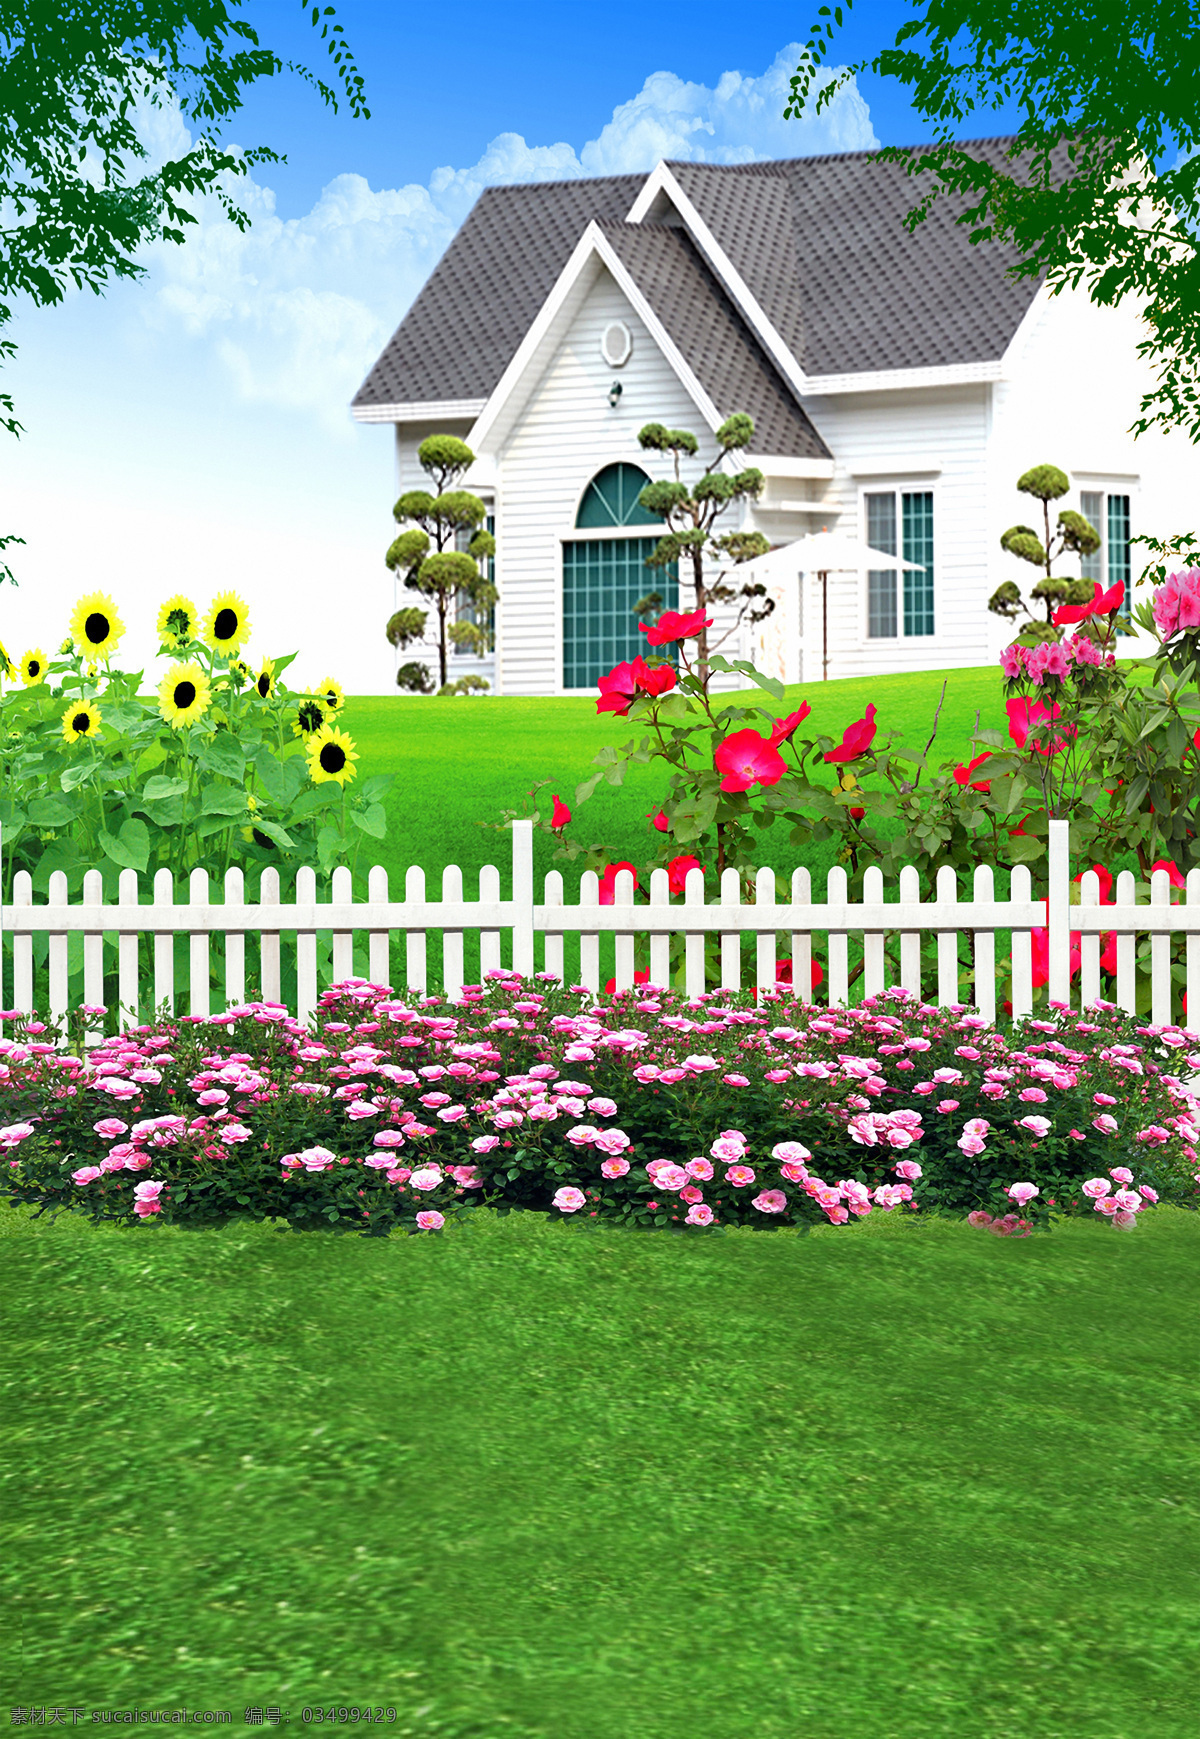 田园 圣地 外景 卡 儿童 背景 图 草坪 房子 栏杆 树 鲜花盛开 向日葵 影楼背景大图 珍藏背景 背景图片